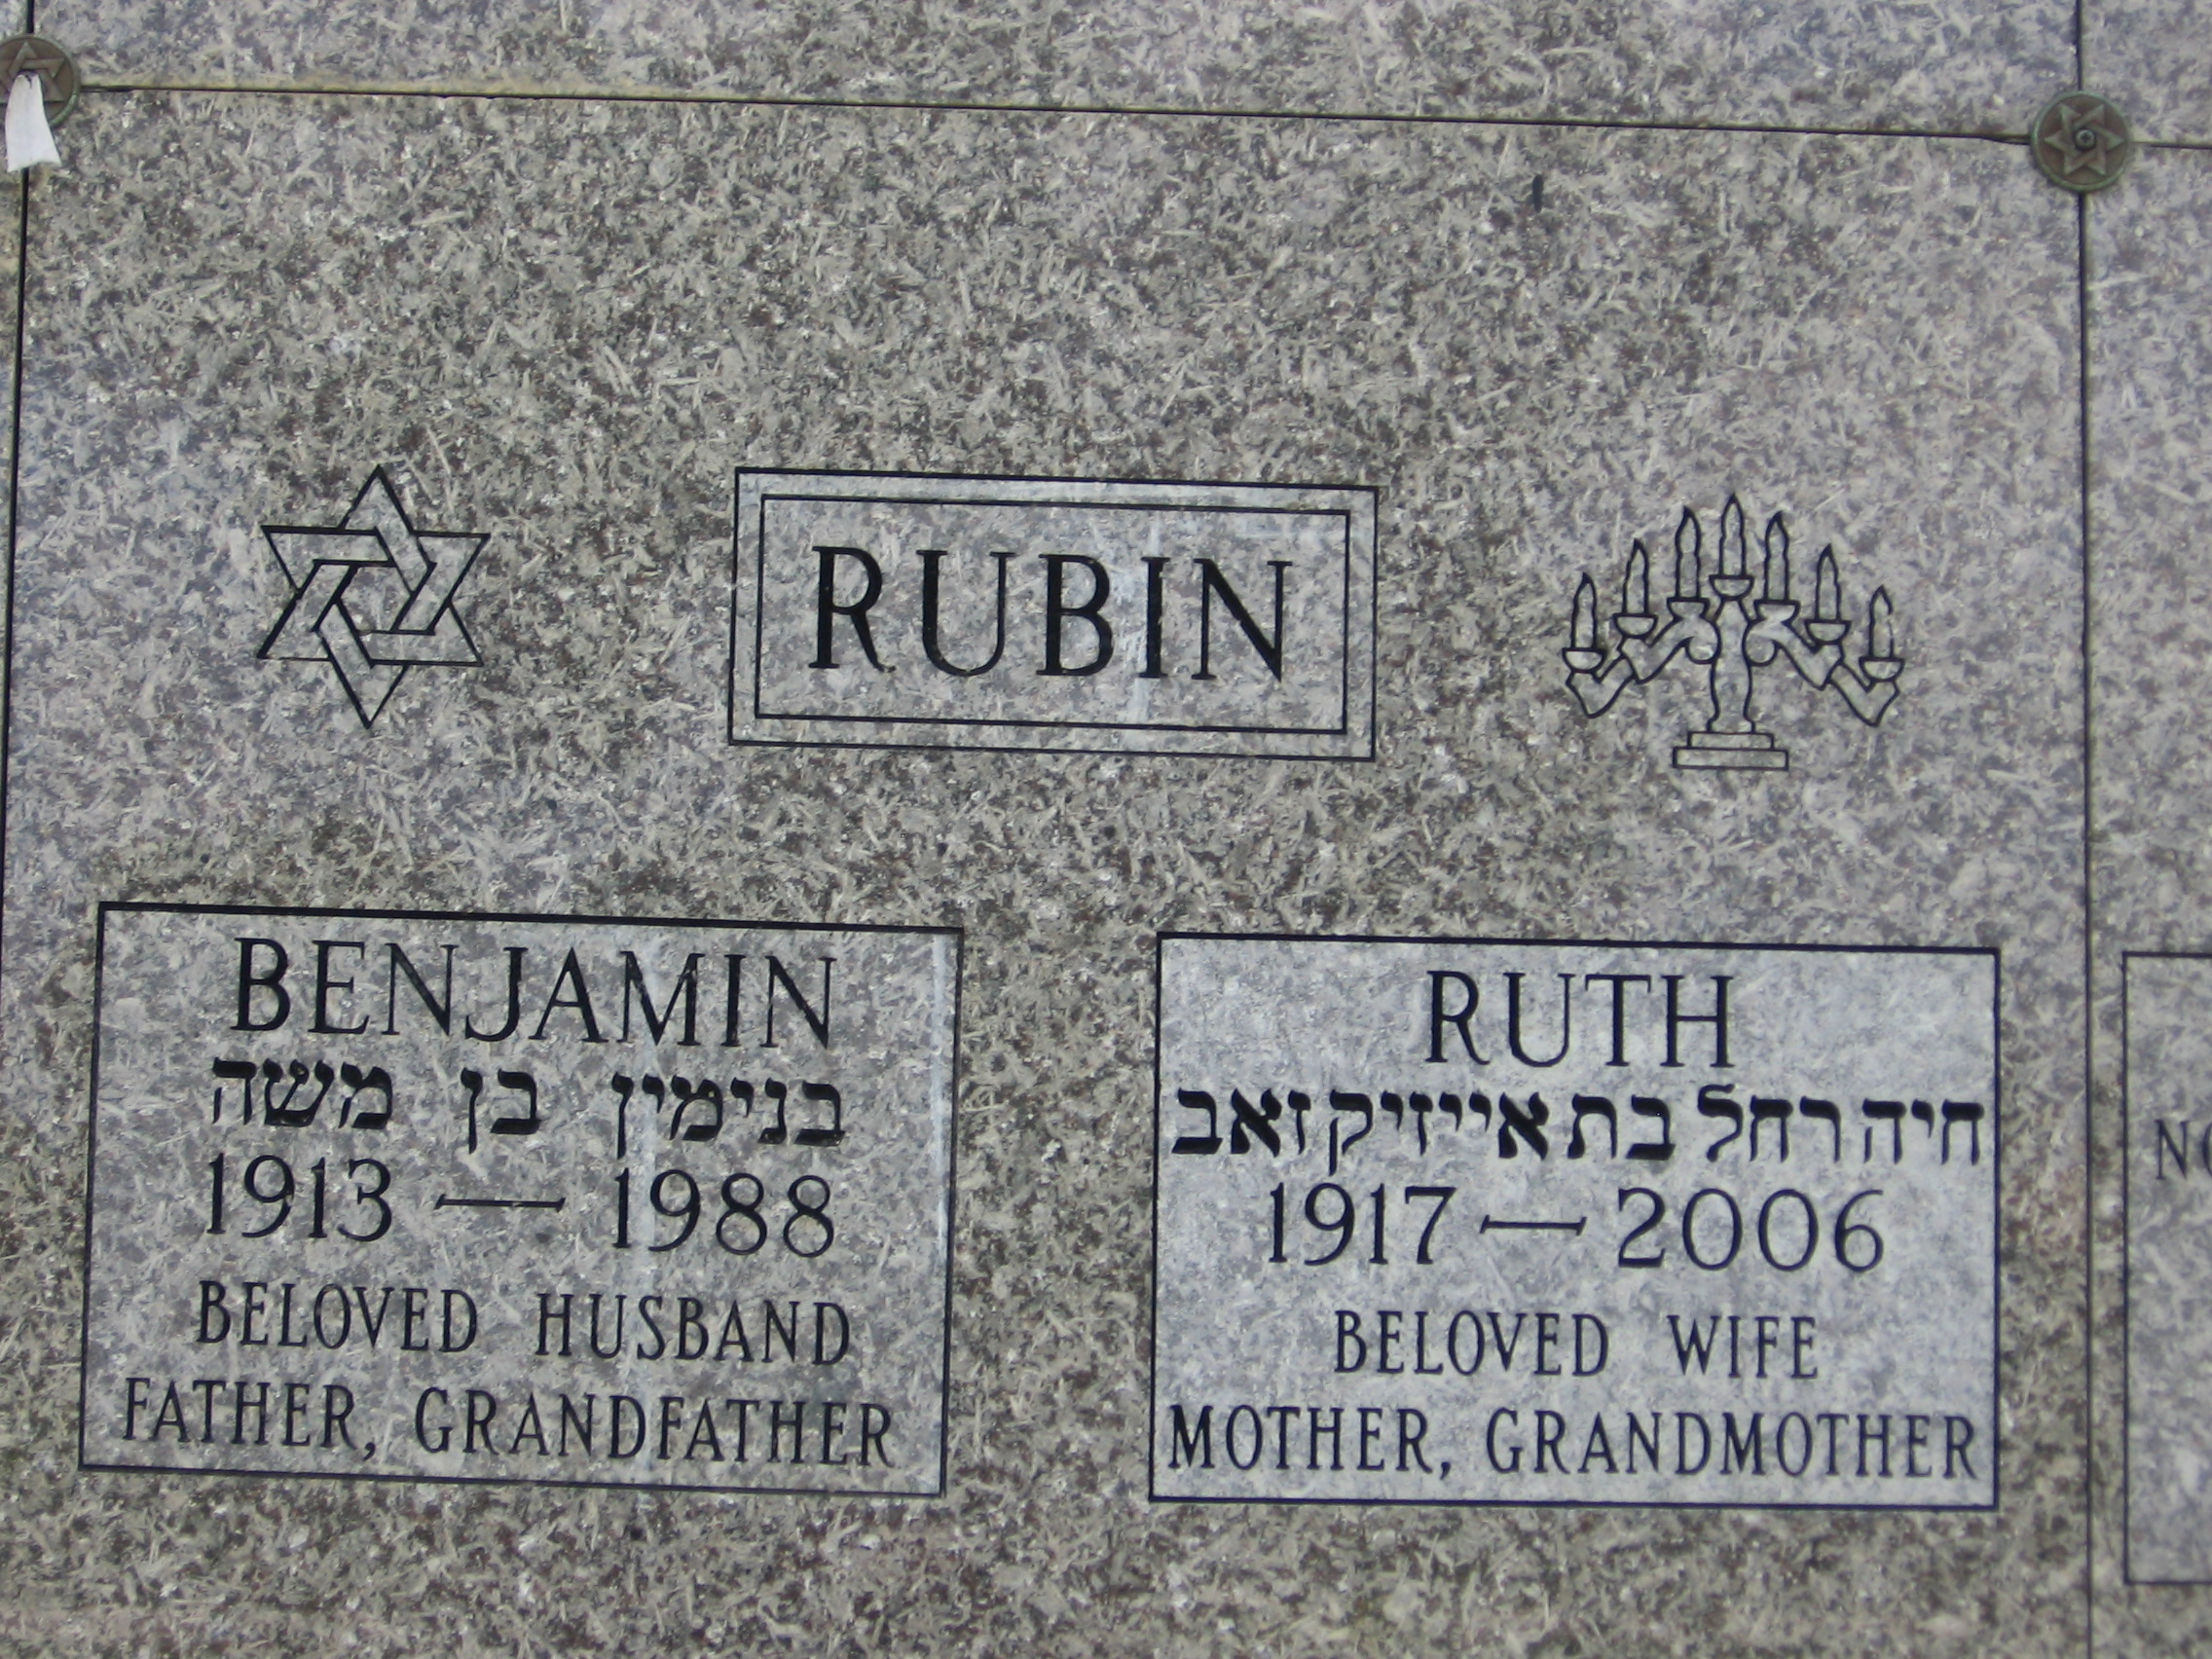 Ruth Rubin